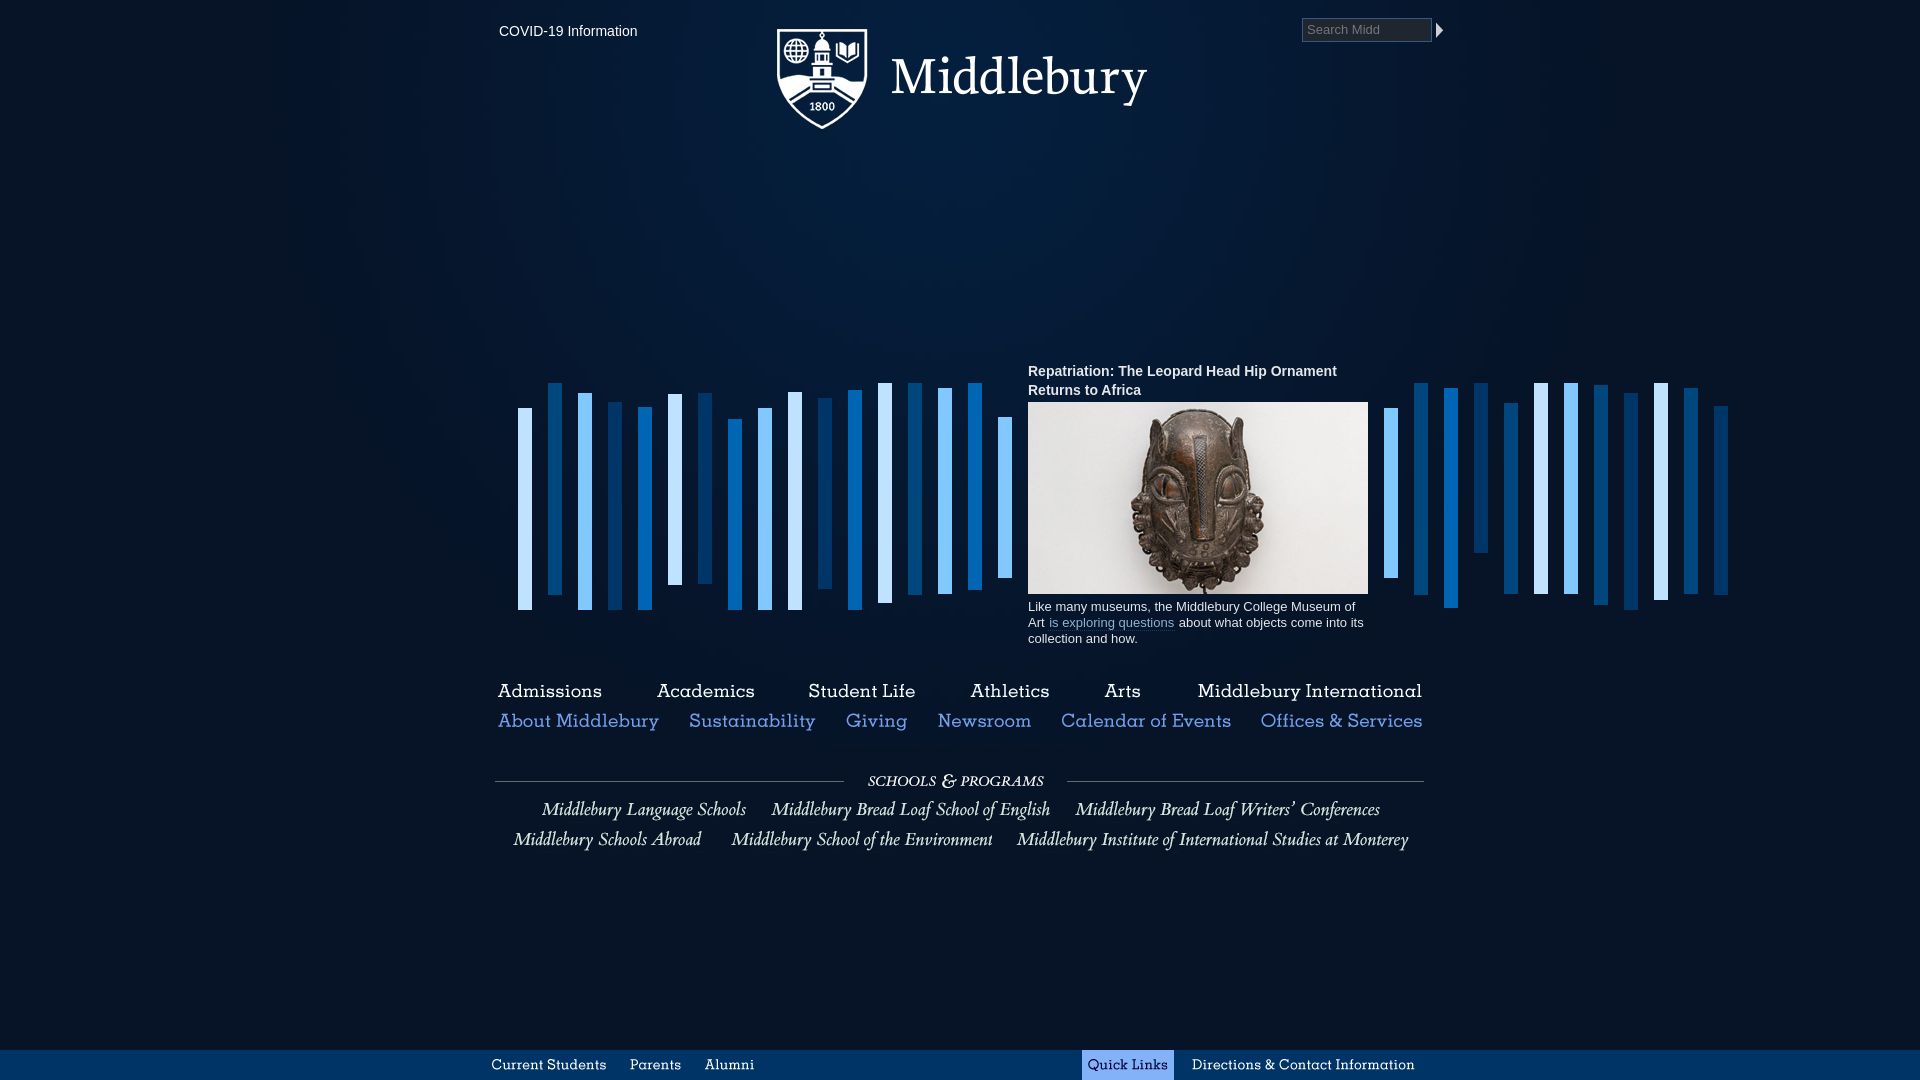 Stato del sito web middlebury.edu è   ONLINE